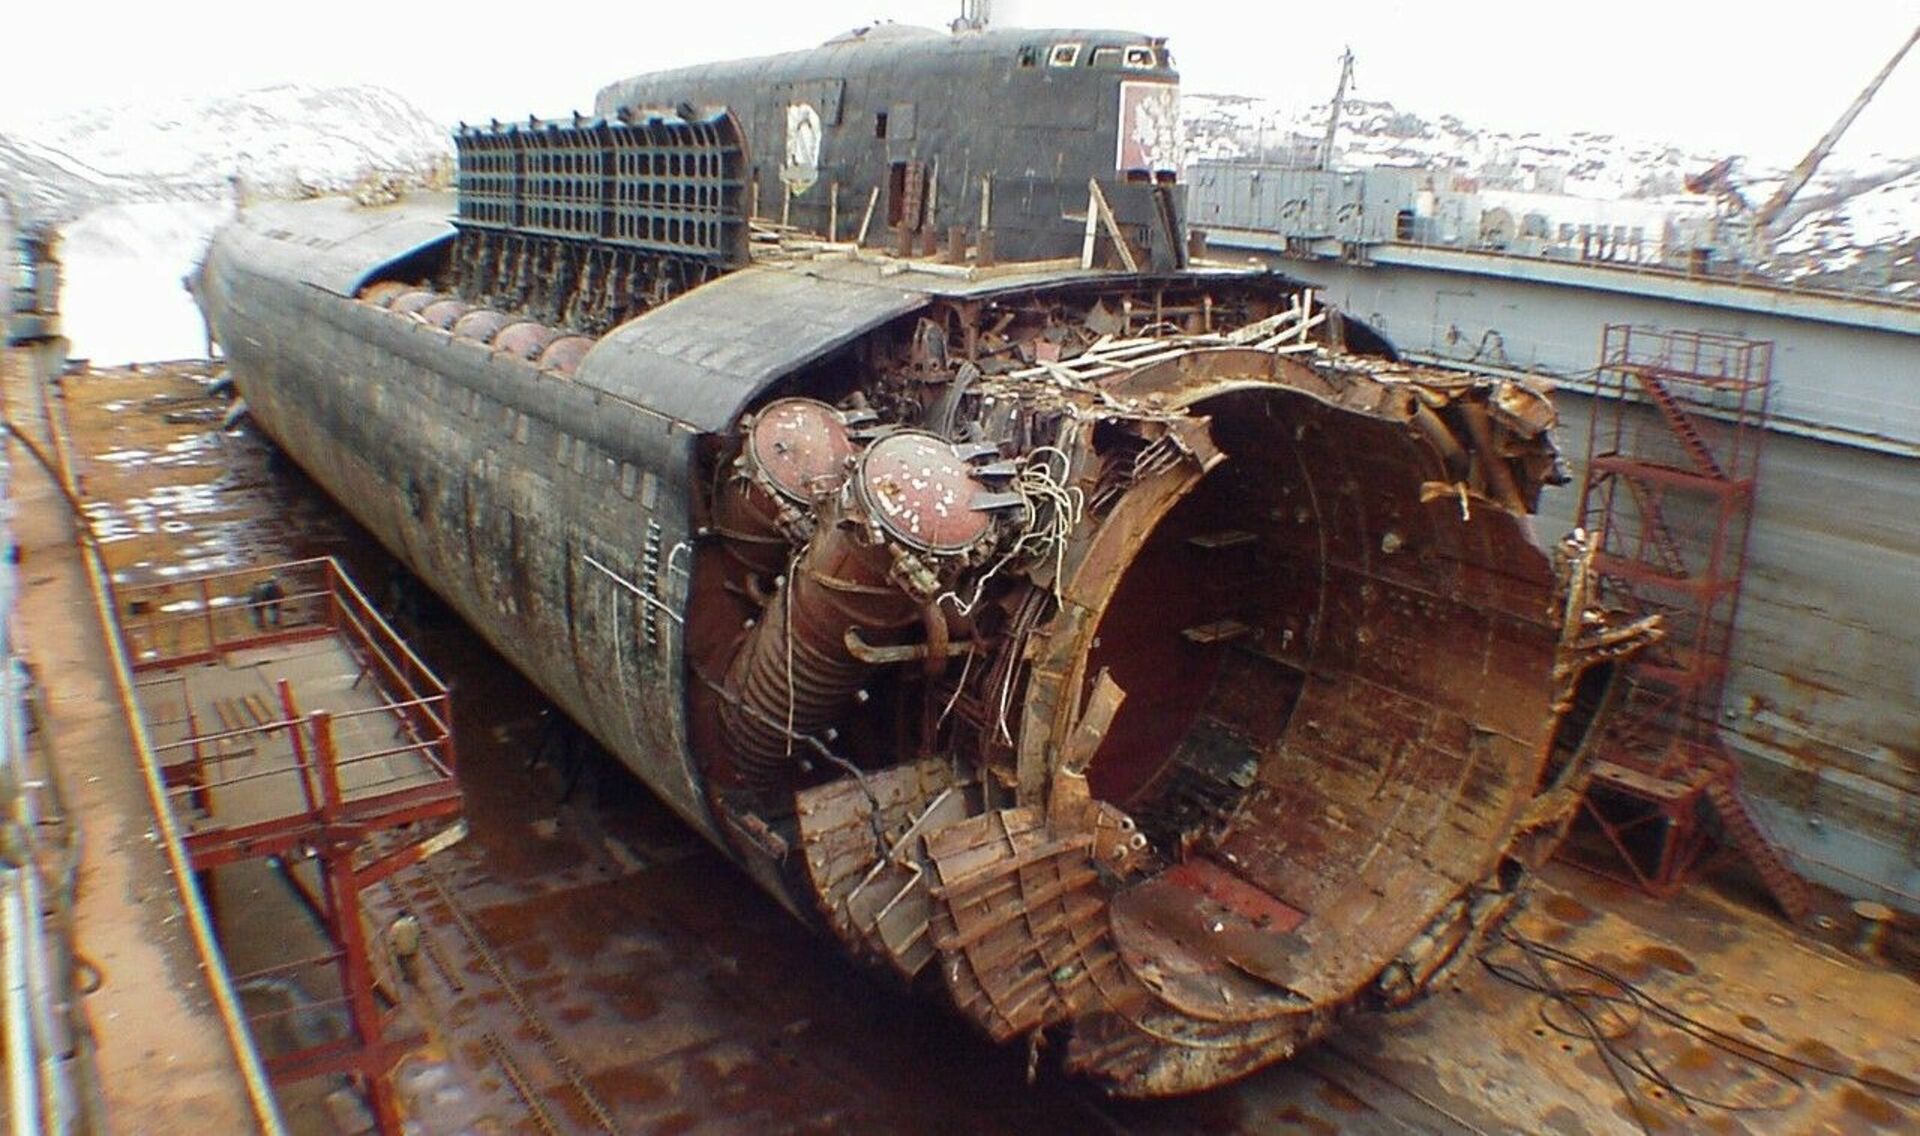 Торпеды курска. К-141 «Курск». Подводная лодка к-141 «Курск». Гибель атомной подводной лодки Курск 12 августа 2000 года. Атомная подводная лодка Курск.